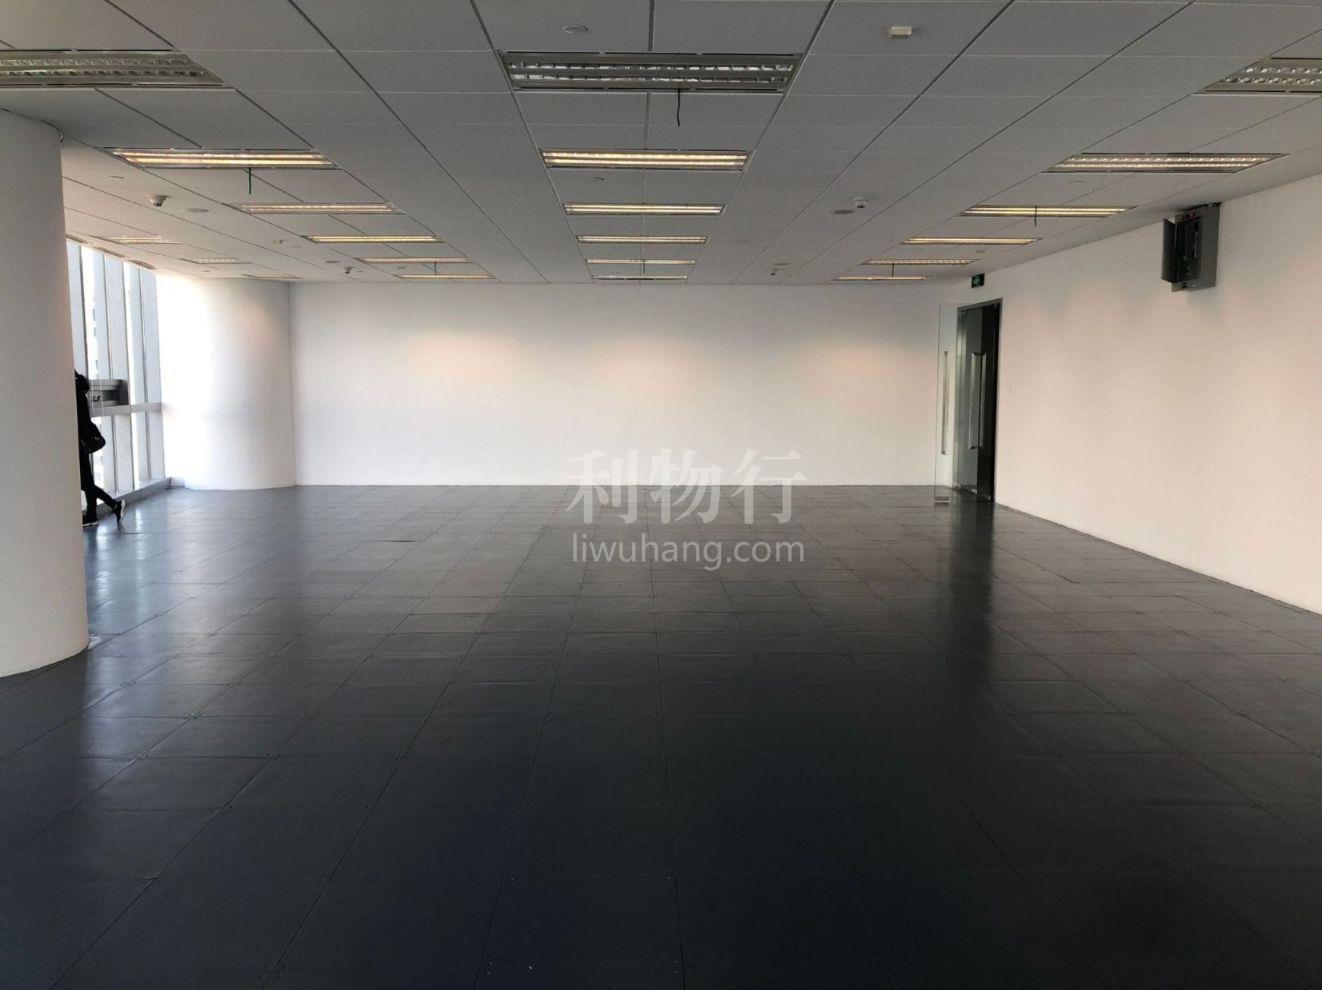 上海环贸广场写字楼700m2办公室9.50元/m2/天 中等装修